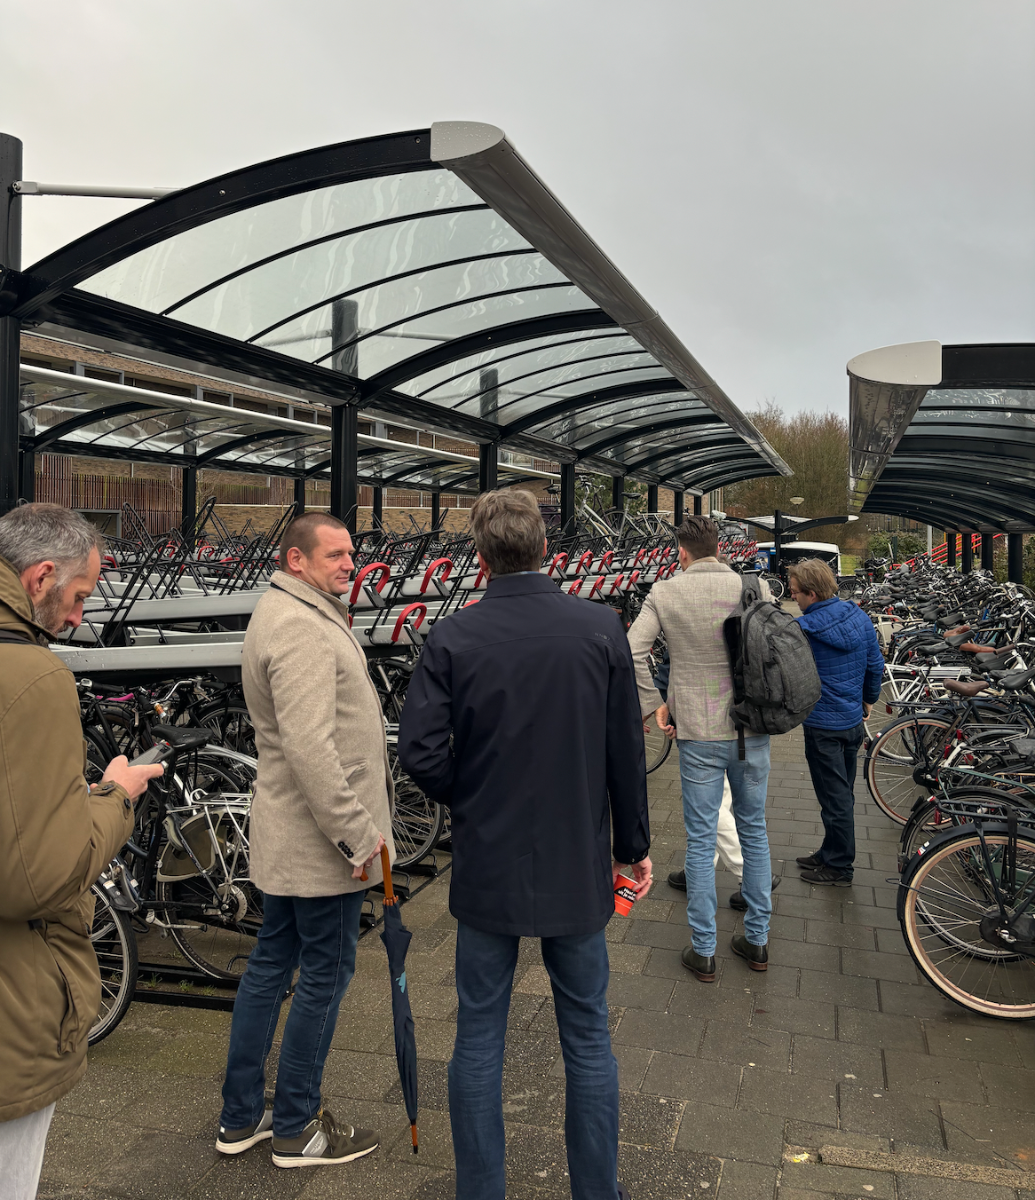 Bericht Uitbreiding fietsenstalling en P+R stationsgebied Rosmalen voltooid bekijken